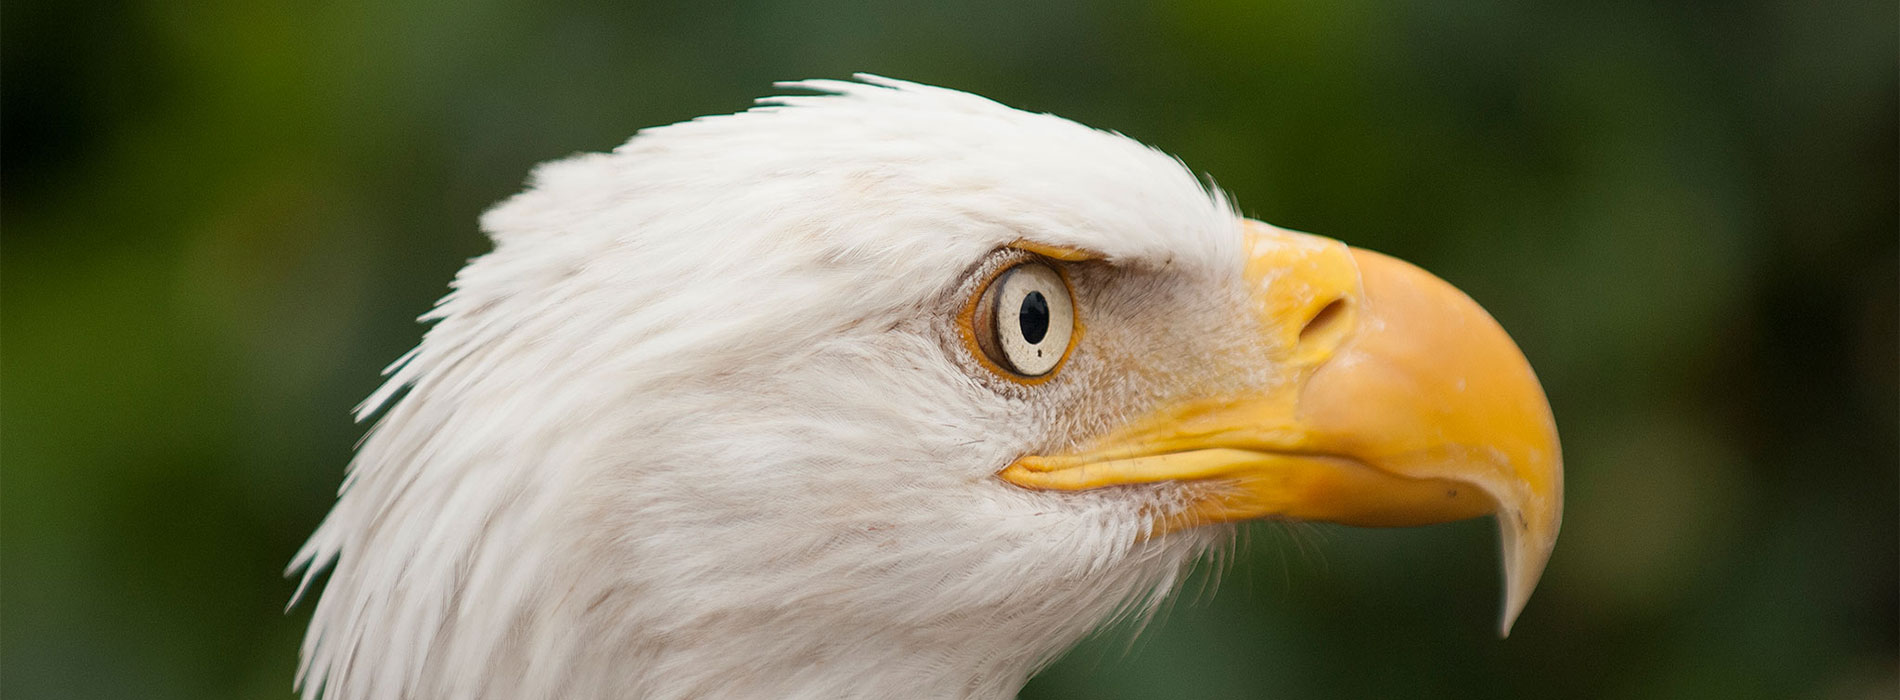 Bald Eagle head profile